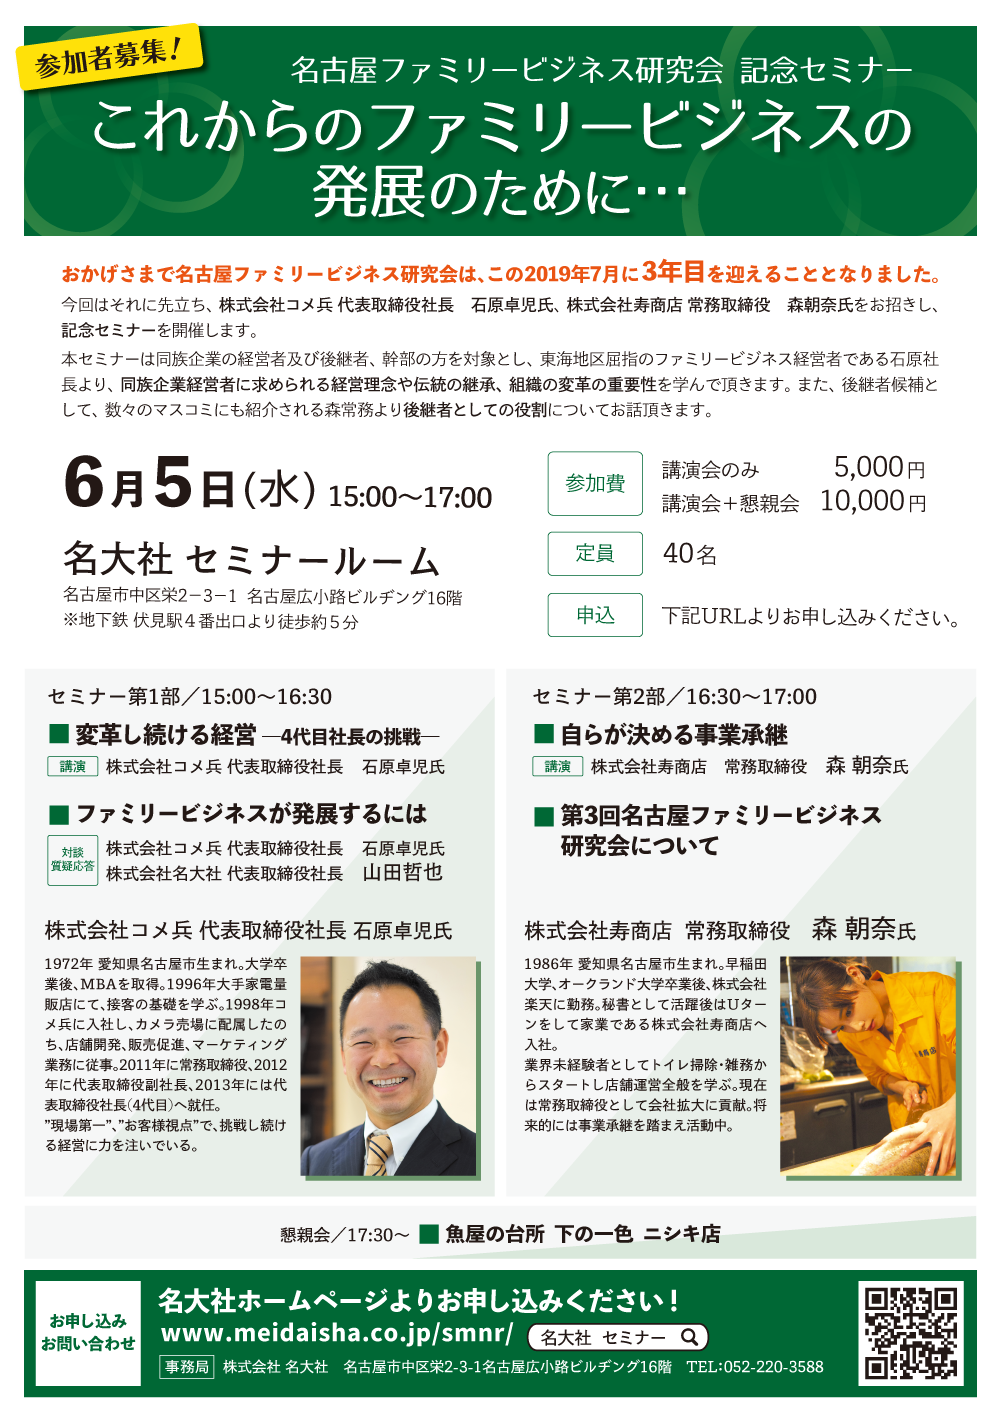 2019年6月5日(水)名古屋ファミリービジネス研究会 記念セミナー